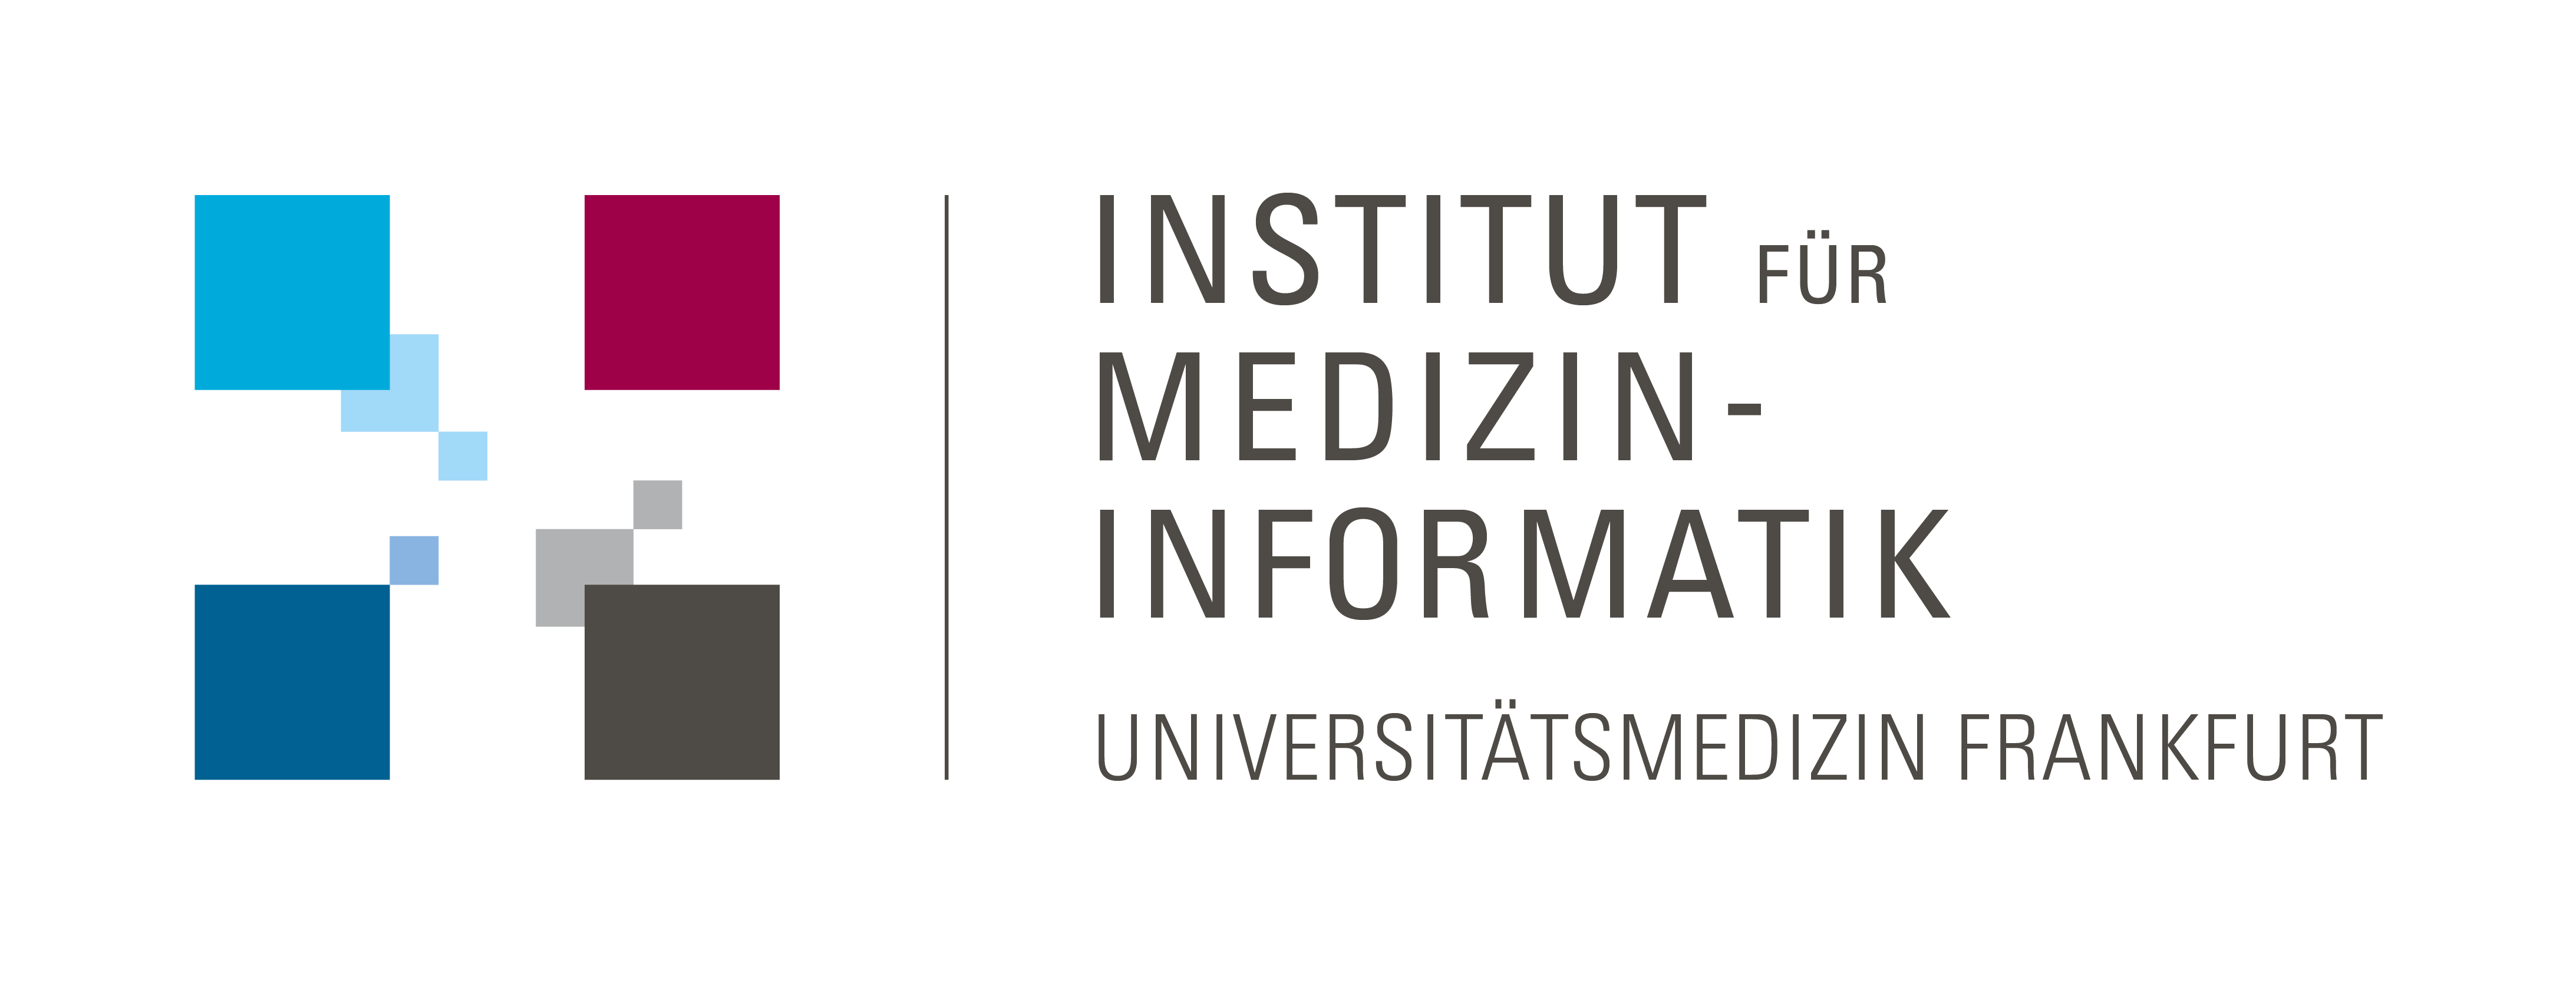 Link zum Institut für Medizininformatik der Universitätsmedizin Frankfurt